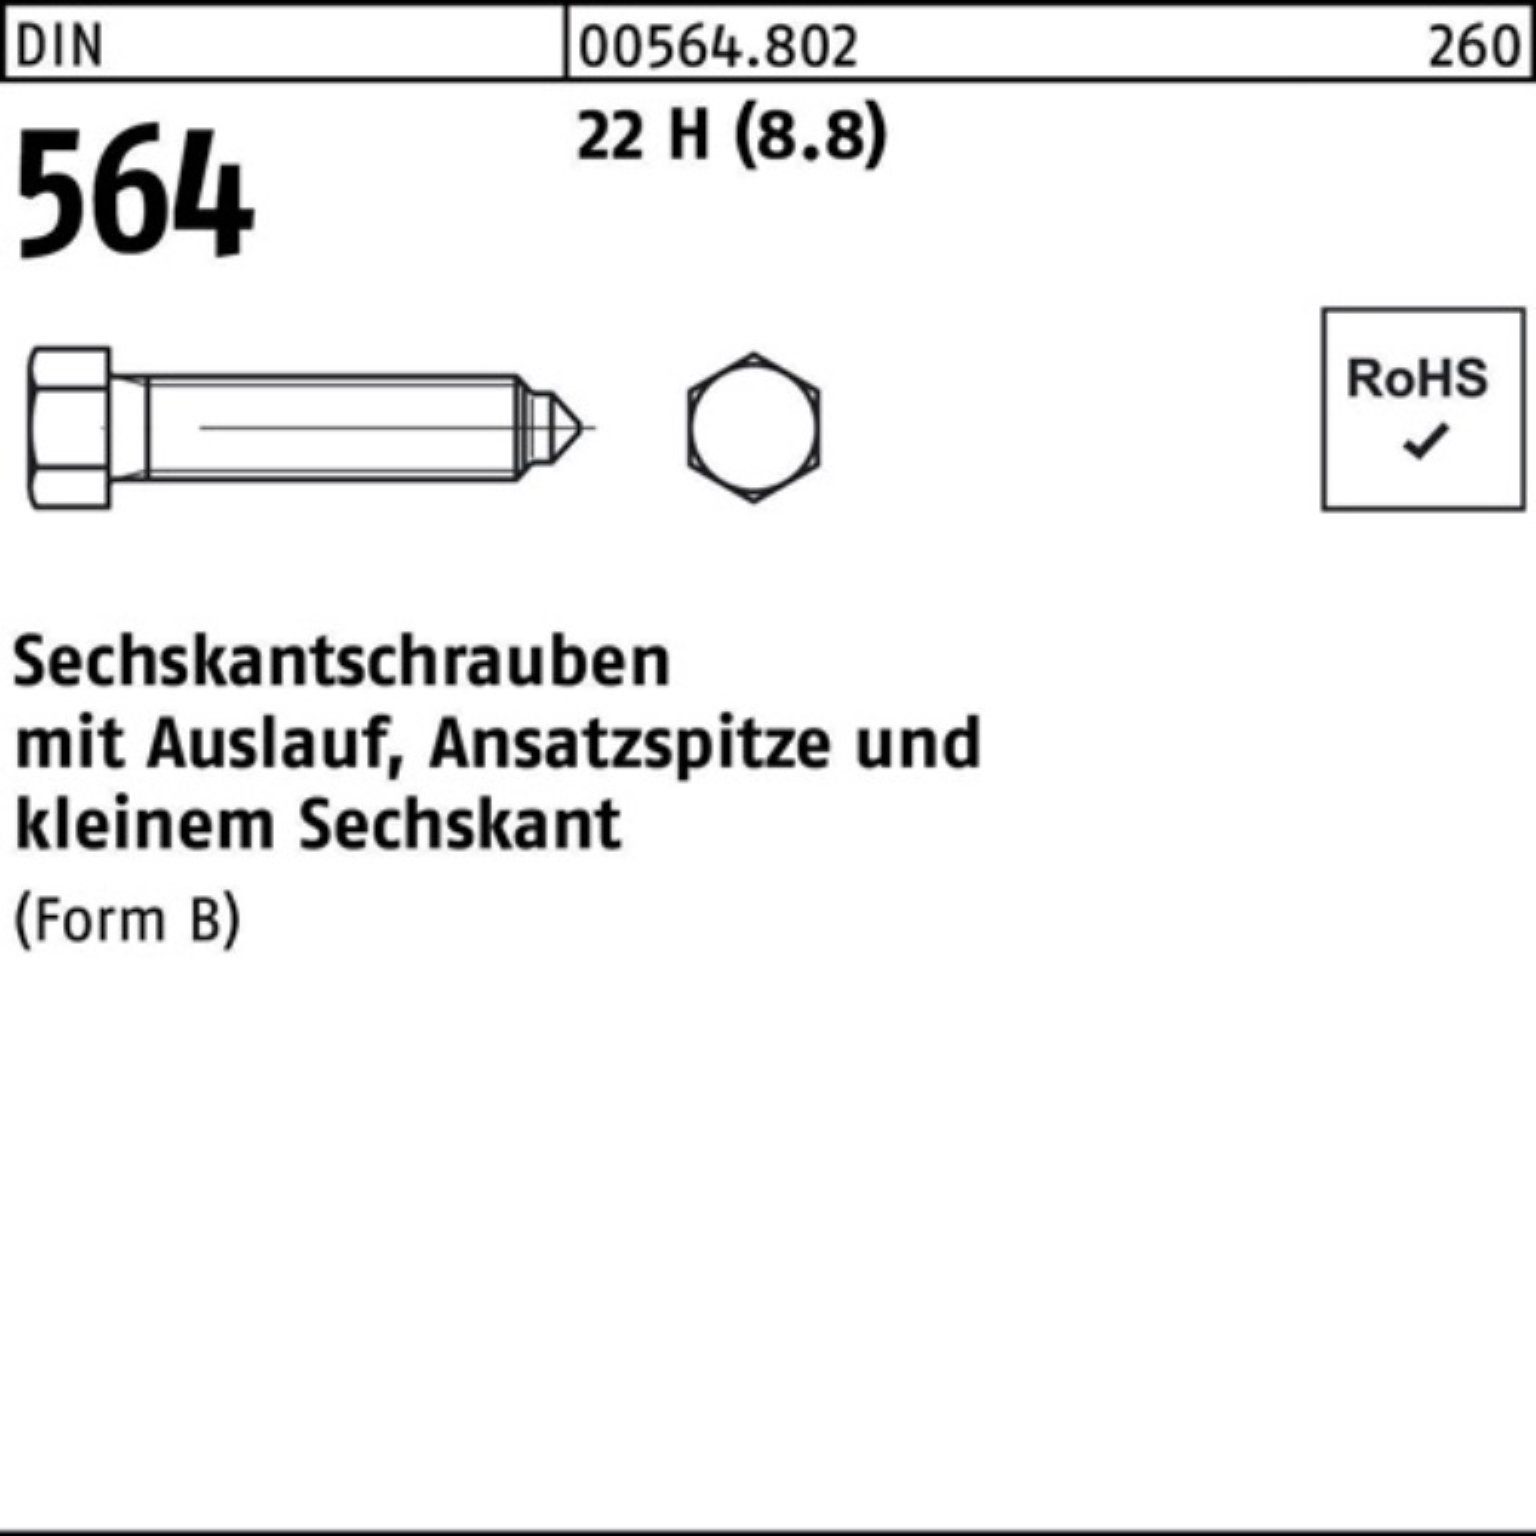 Reyher Sechskantschraube 100er Pack Sechskantschraube DIN 564 Ansatzspitze/Auslauf BM 12x 25 22 | Schrauben